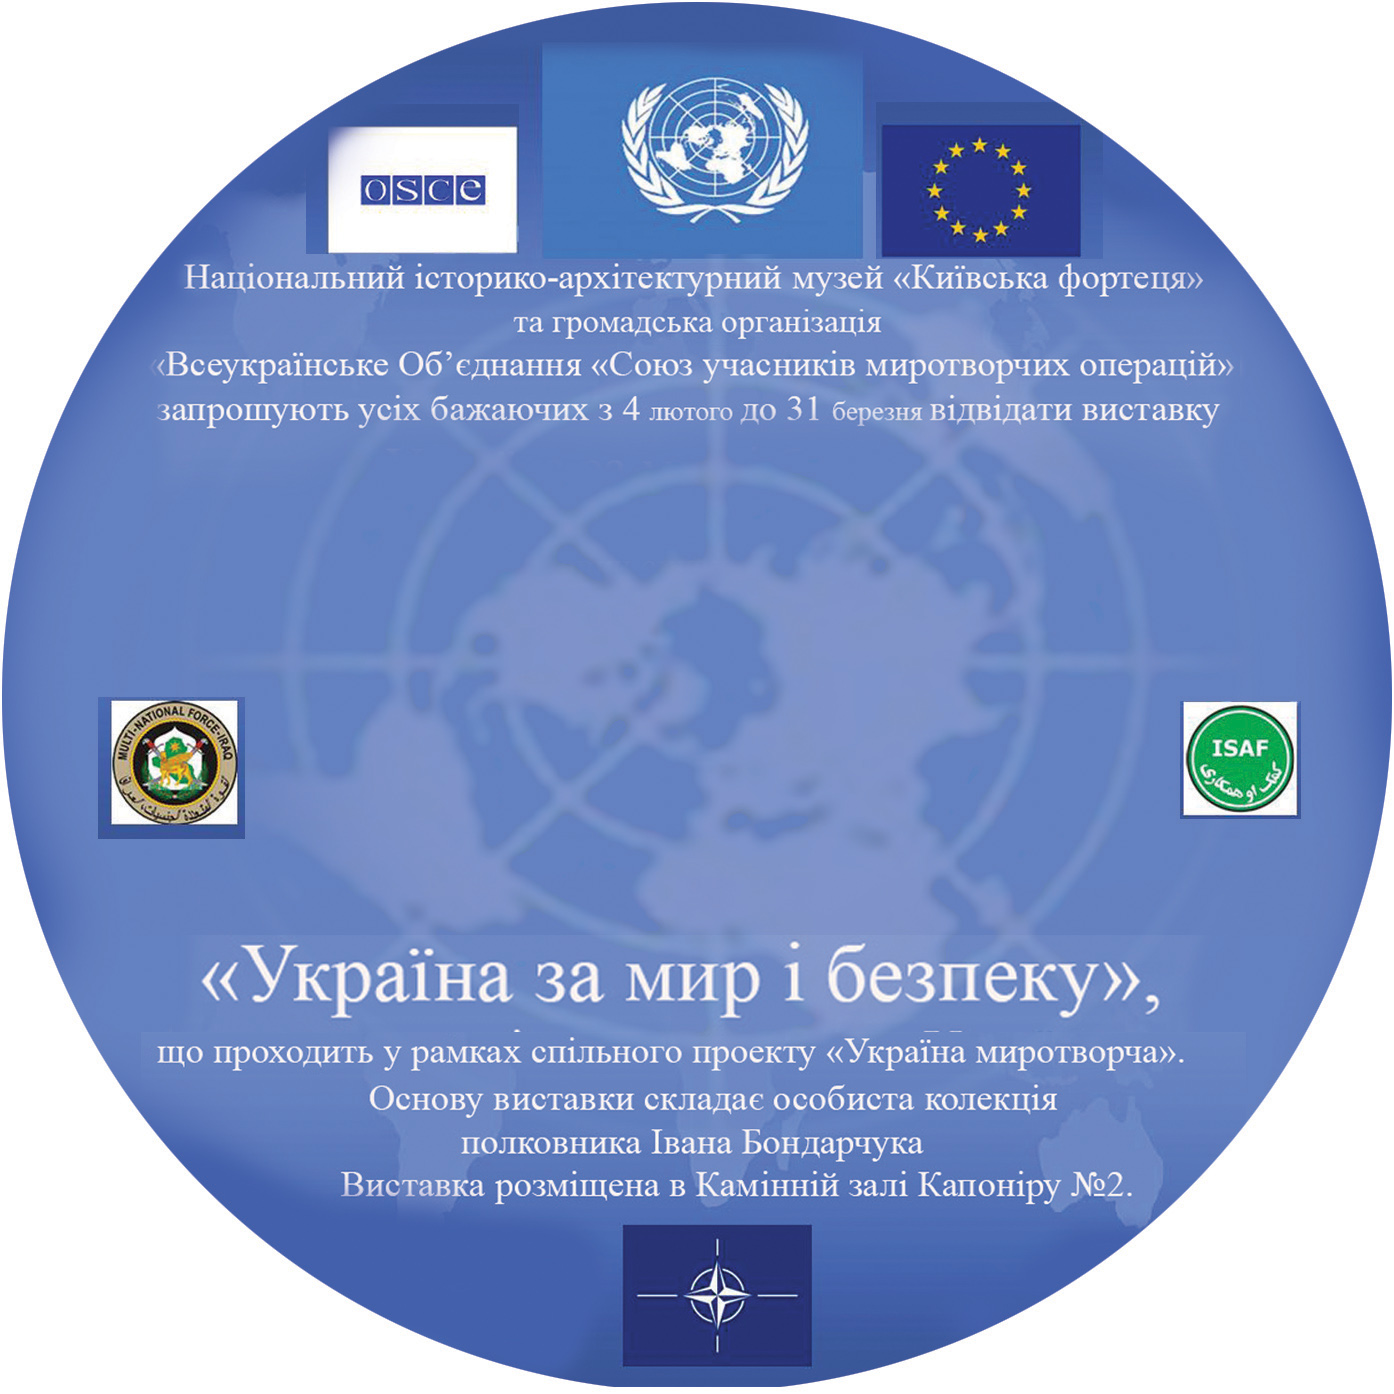 Компакт-диск "Виставка "Україна за мир і безпеку"